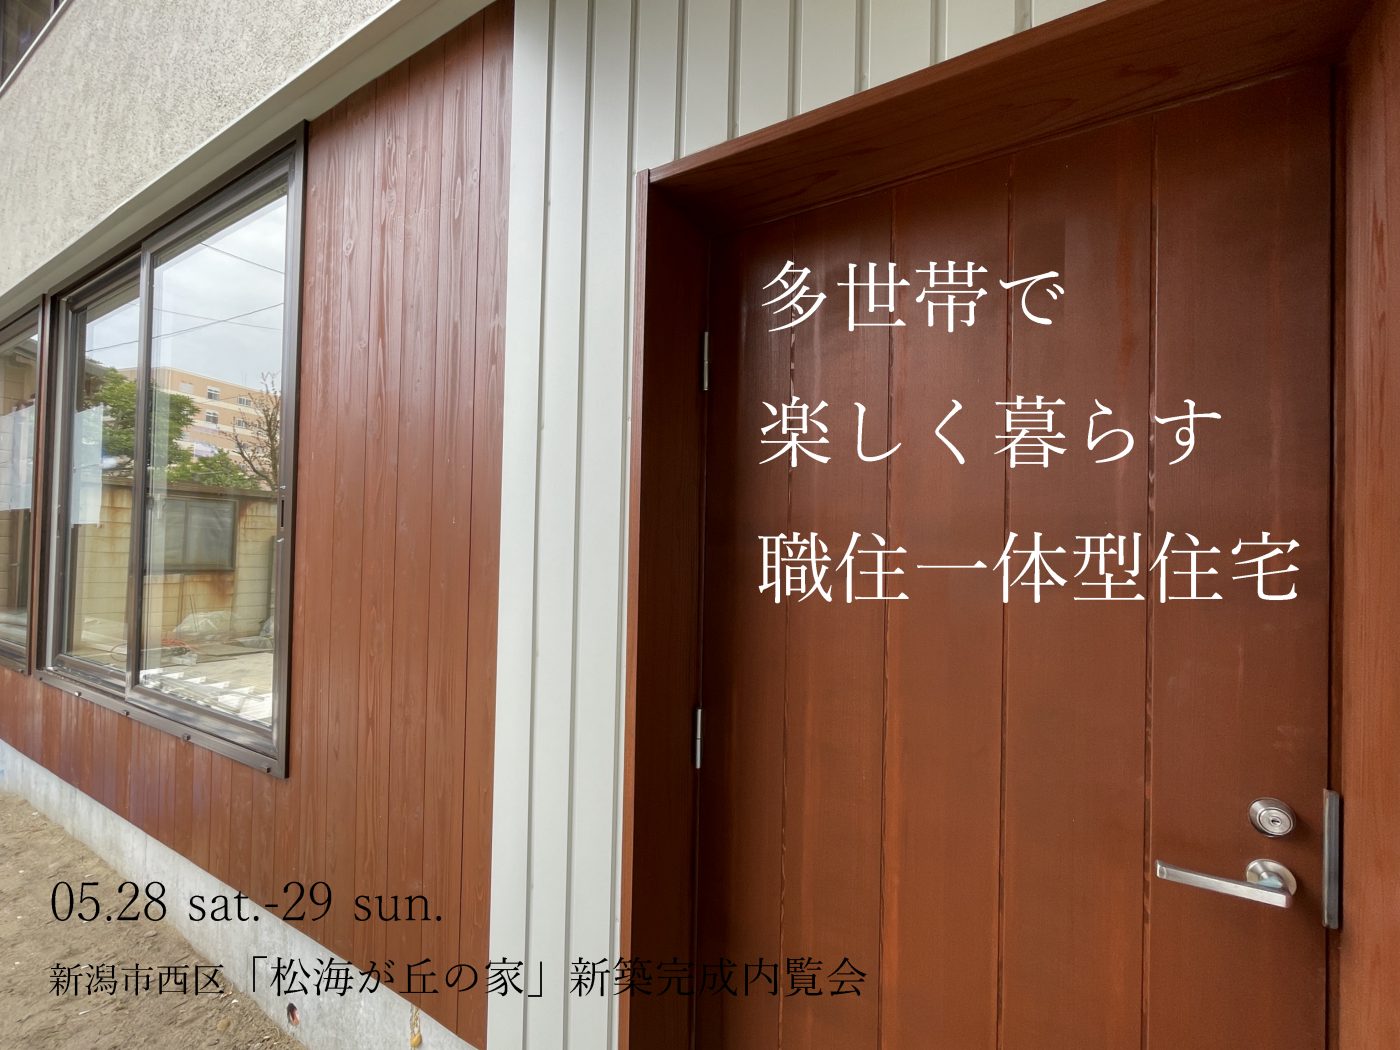 【オーガニックスタジオ新潟】多世帯で楽しく暮らす職住一体型住宅「松海が丘の家」新築完成内覧会